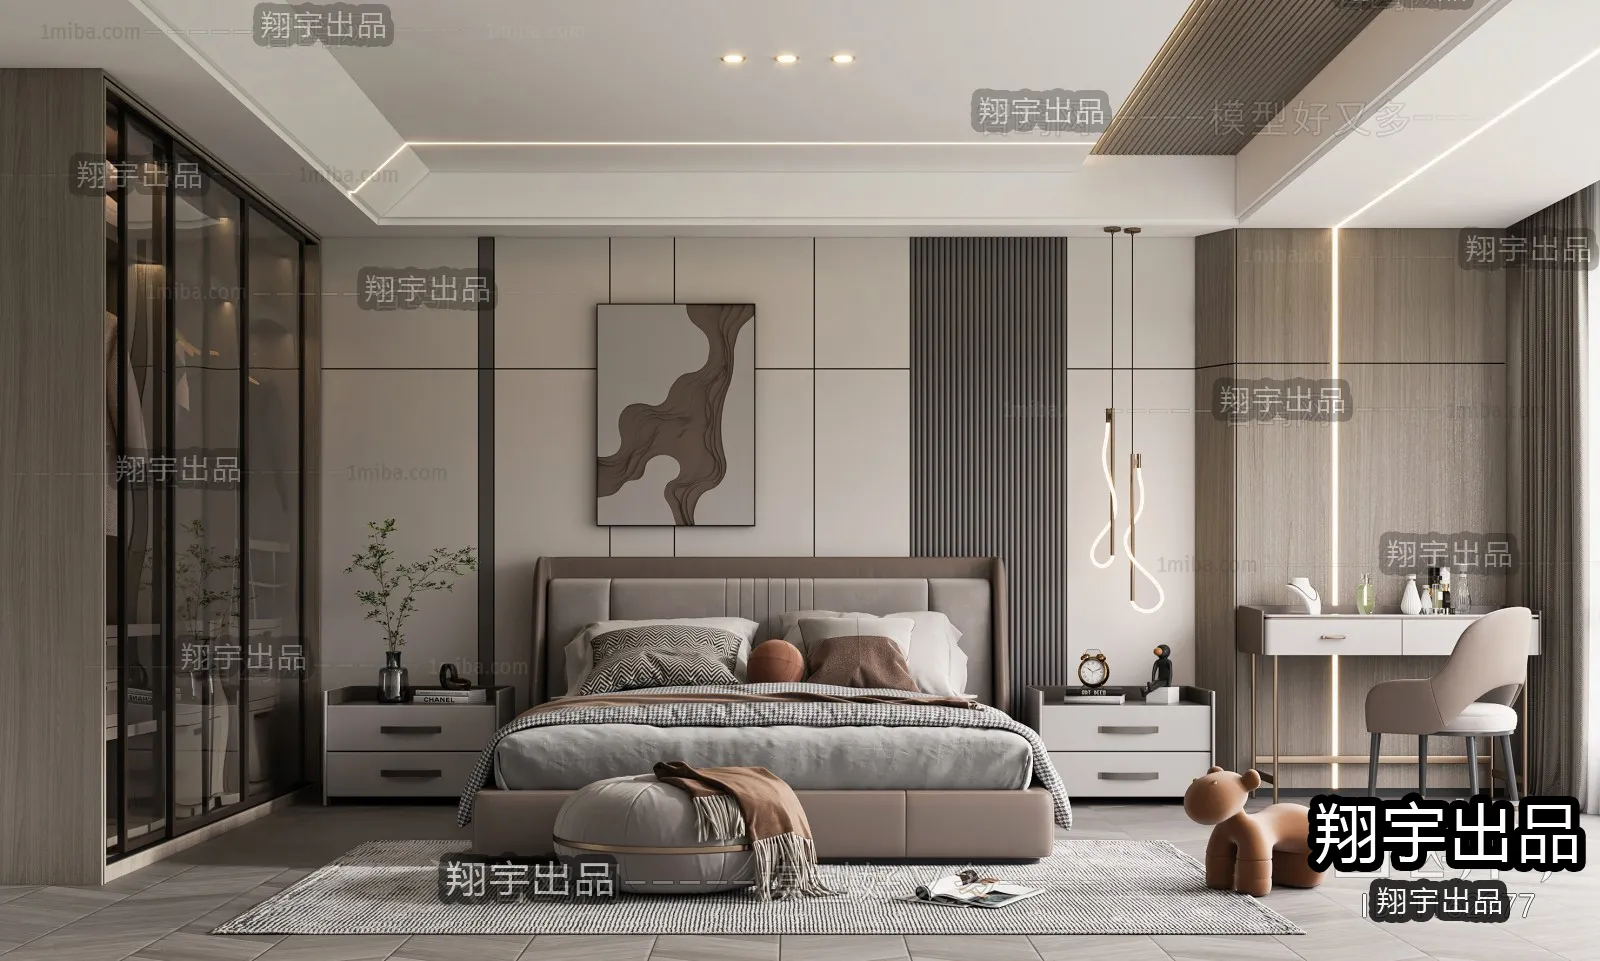 Bedroom – Modern Interior Design – 3D Models – 055